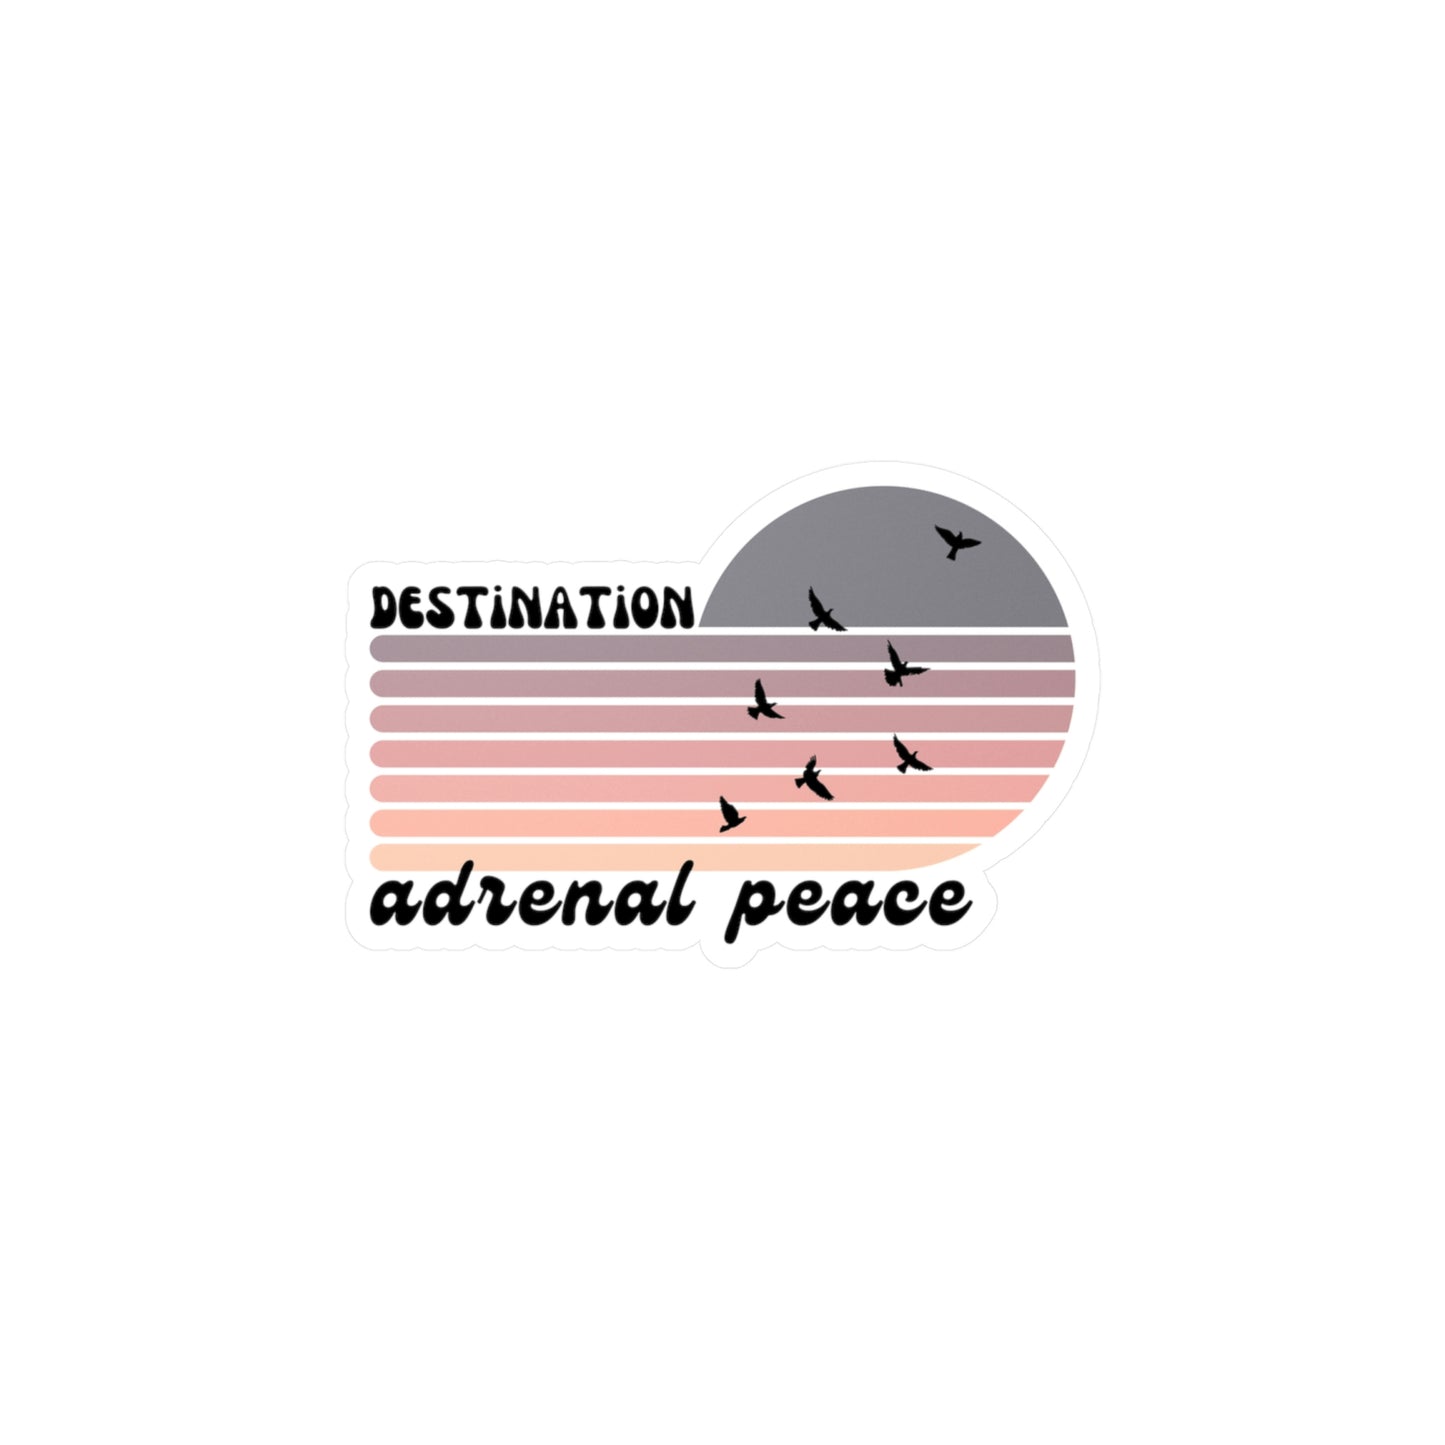 Destination: Adrenal Peace (purple gradient) Kiss-Cut Vinyl Decals